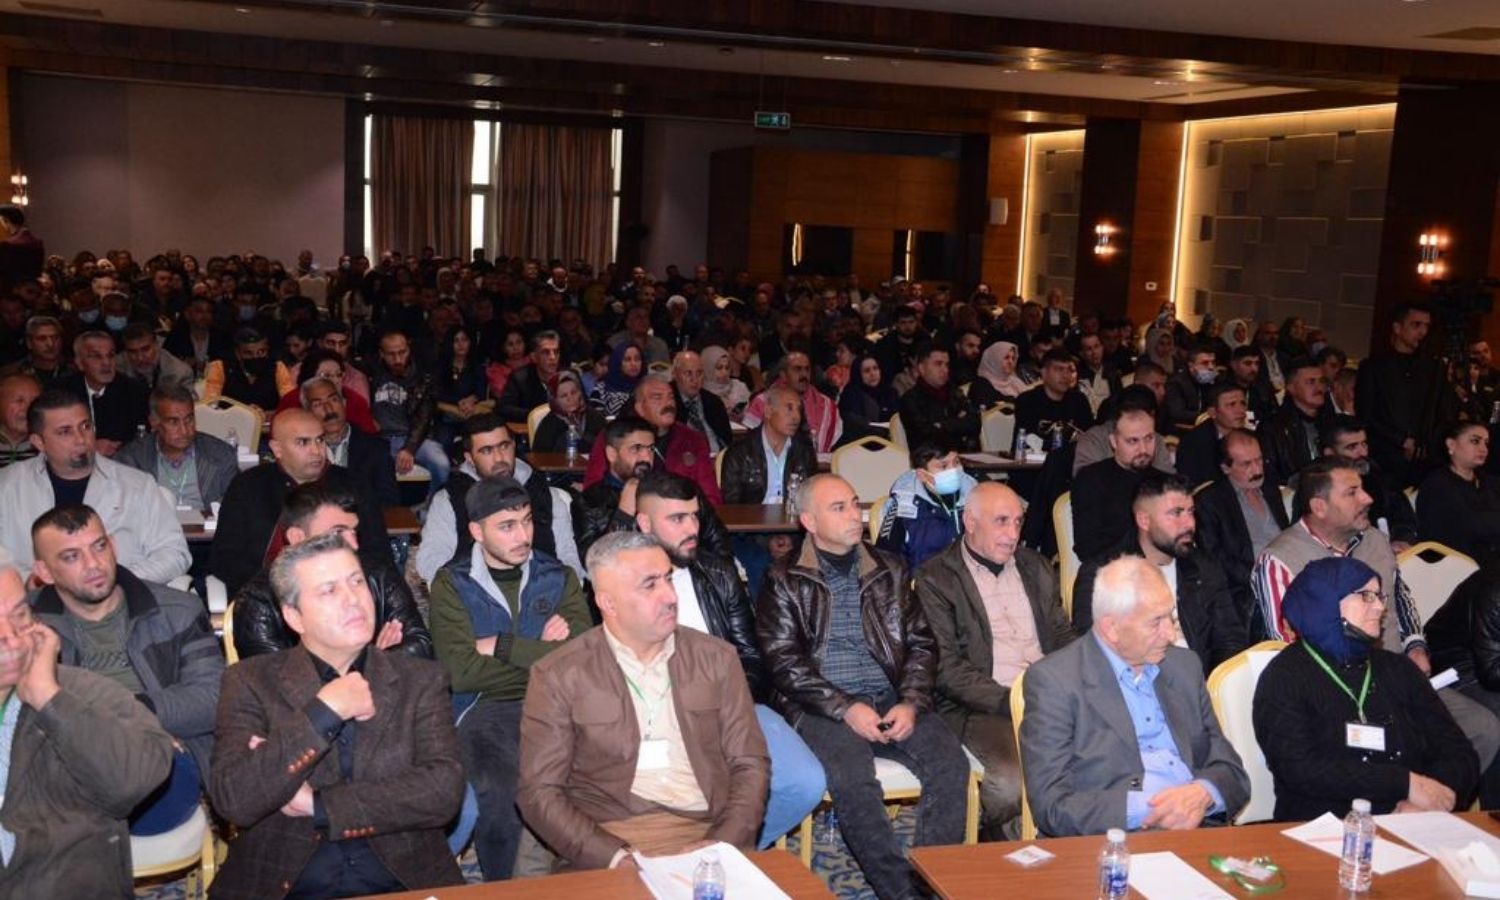 اجتماع الجالية العفرينية في إقليم كردستان العراق، المصدر: صفحة "مجلس عفرين المدني" على "فيس بوك"، 2021.